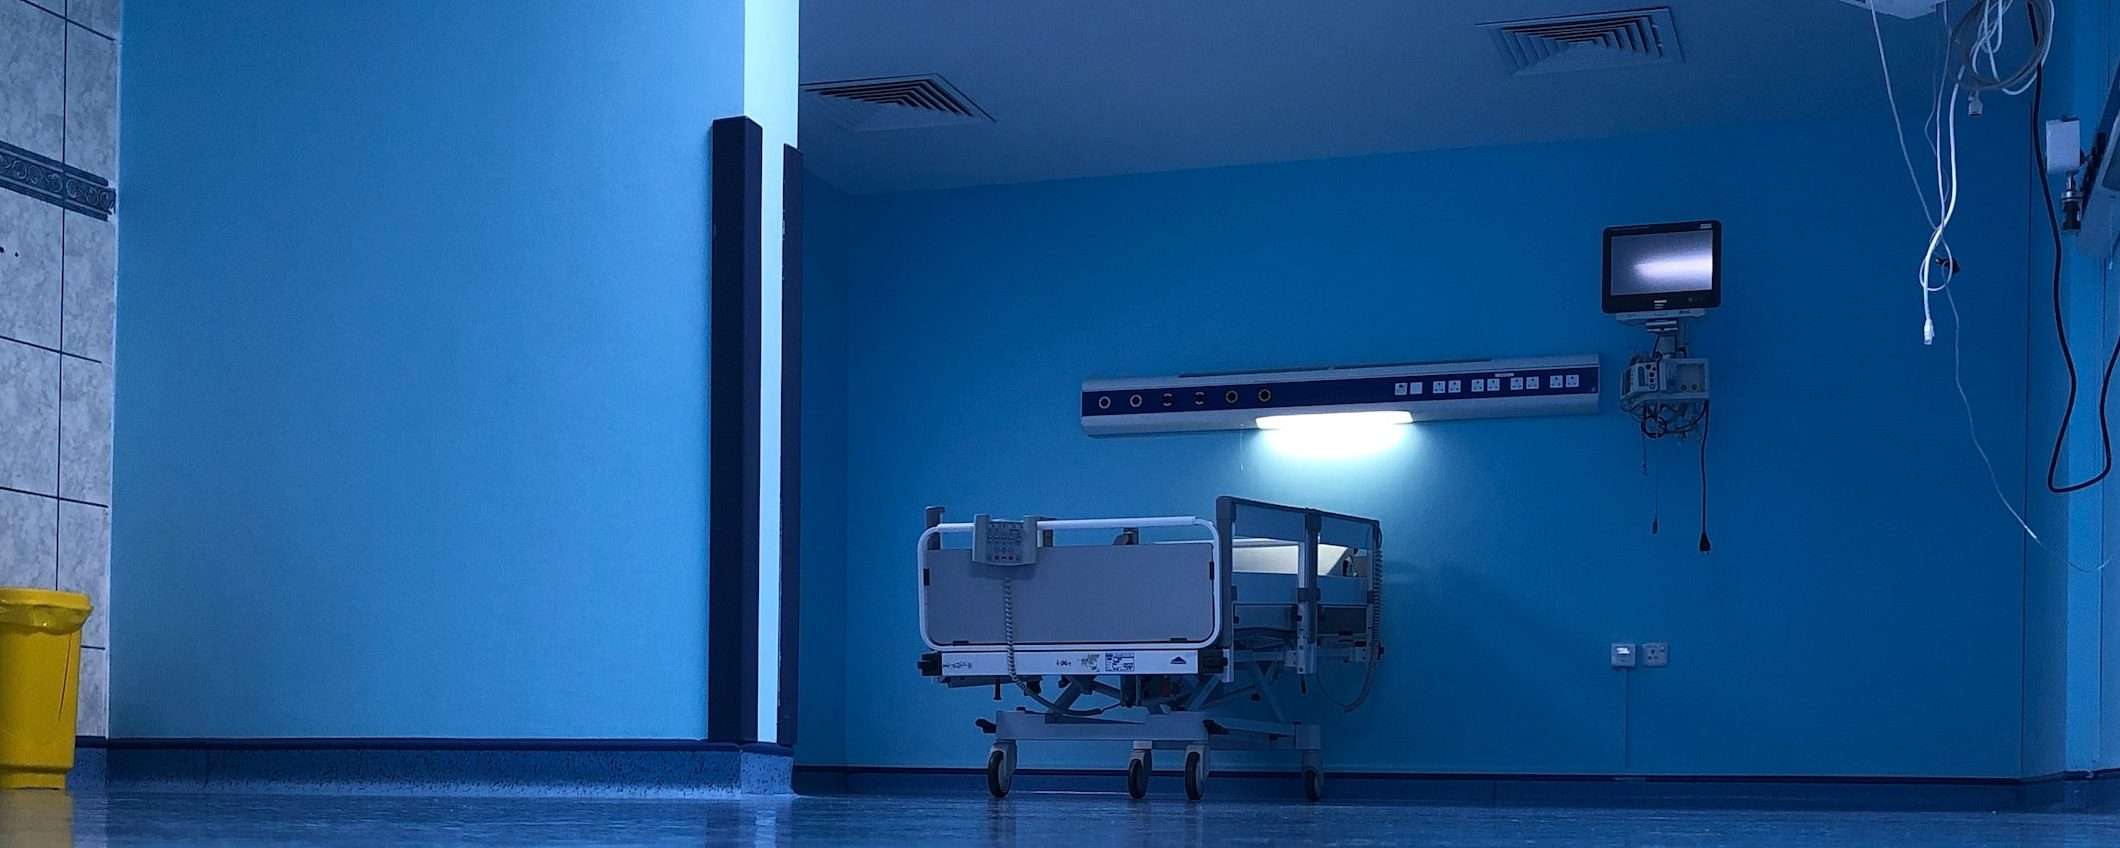 Ospedali e cybersicurezza, device connessi a rischio